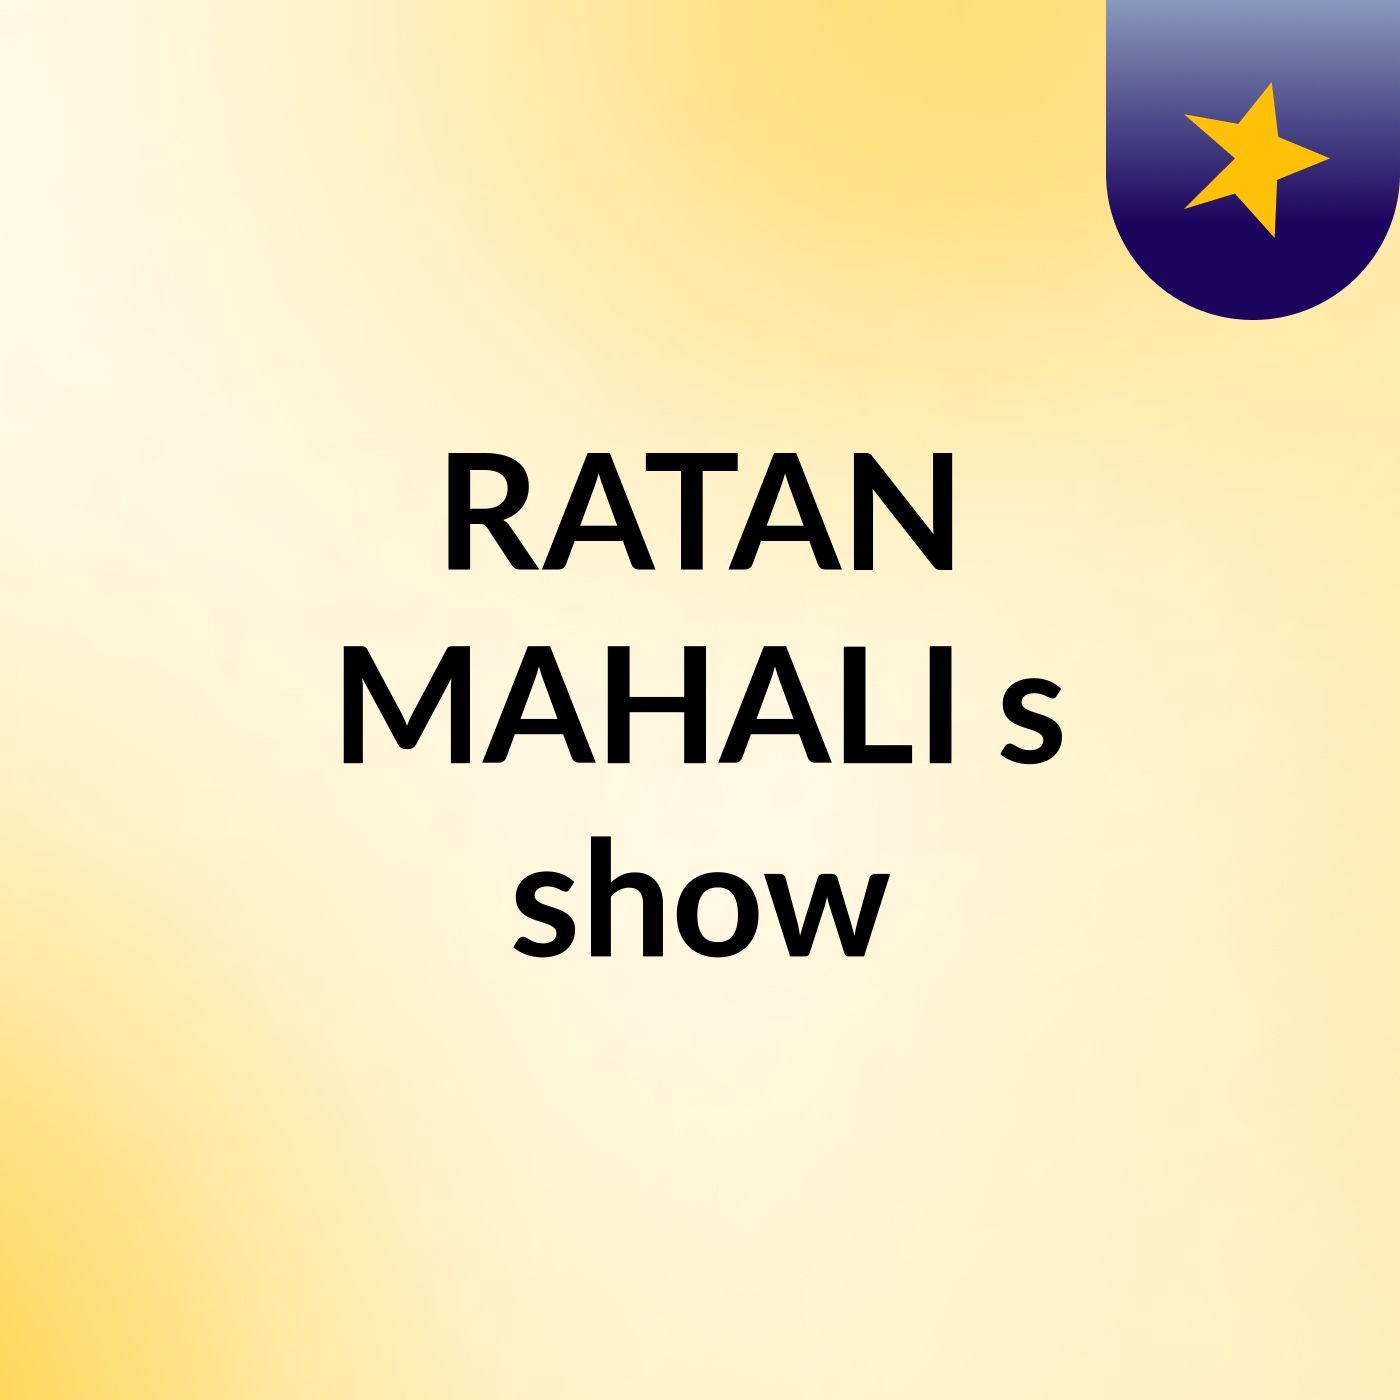 RATAN MAHALI's show